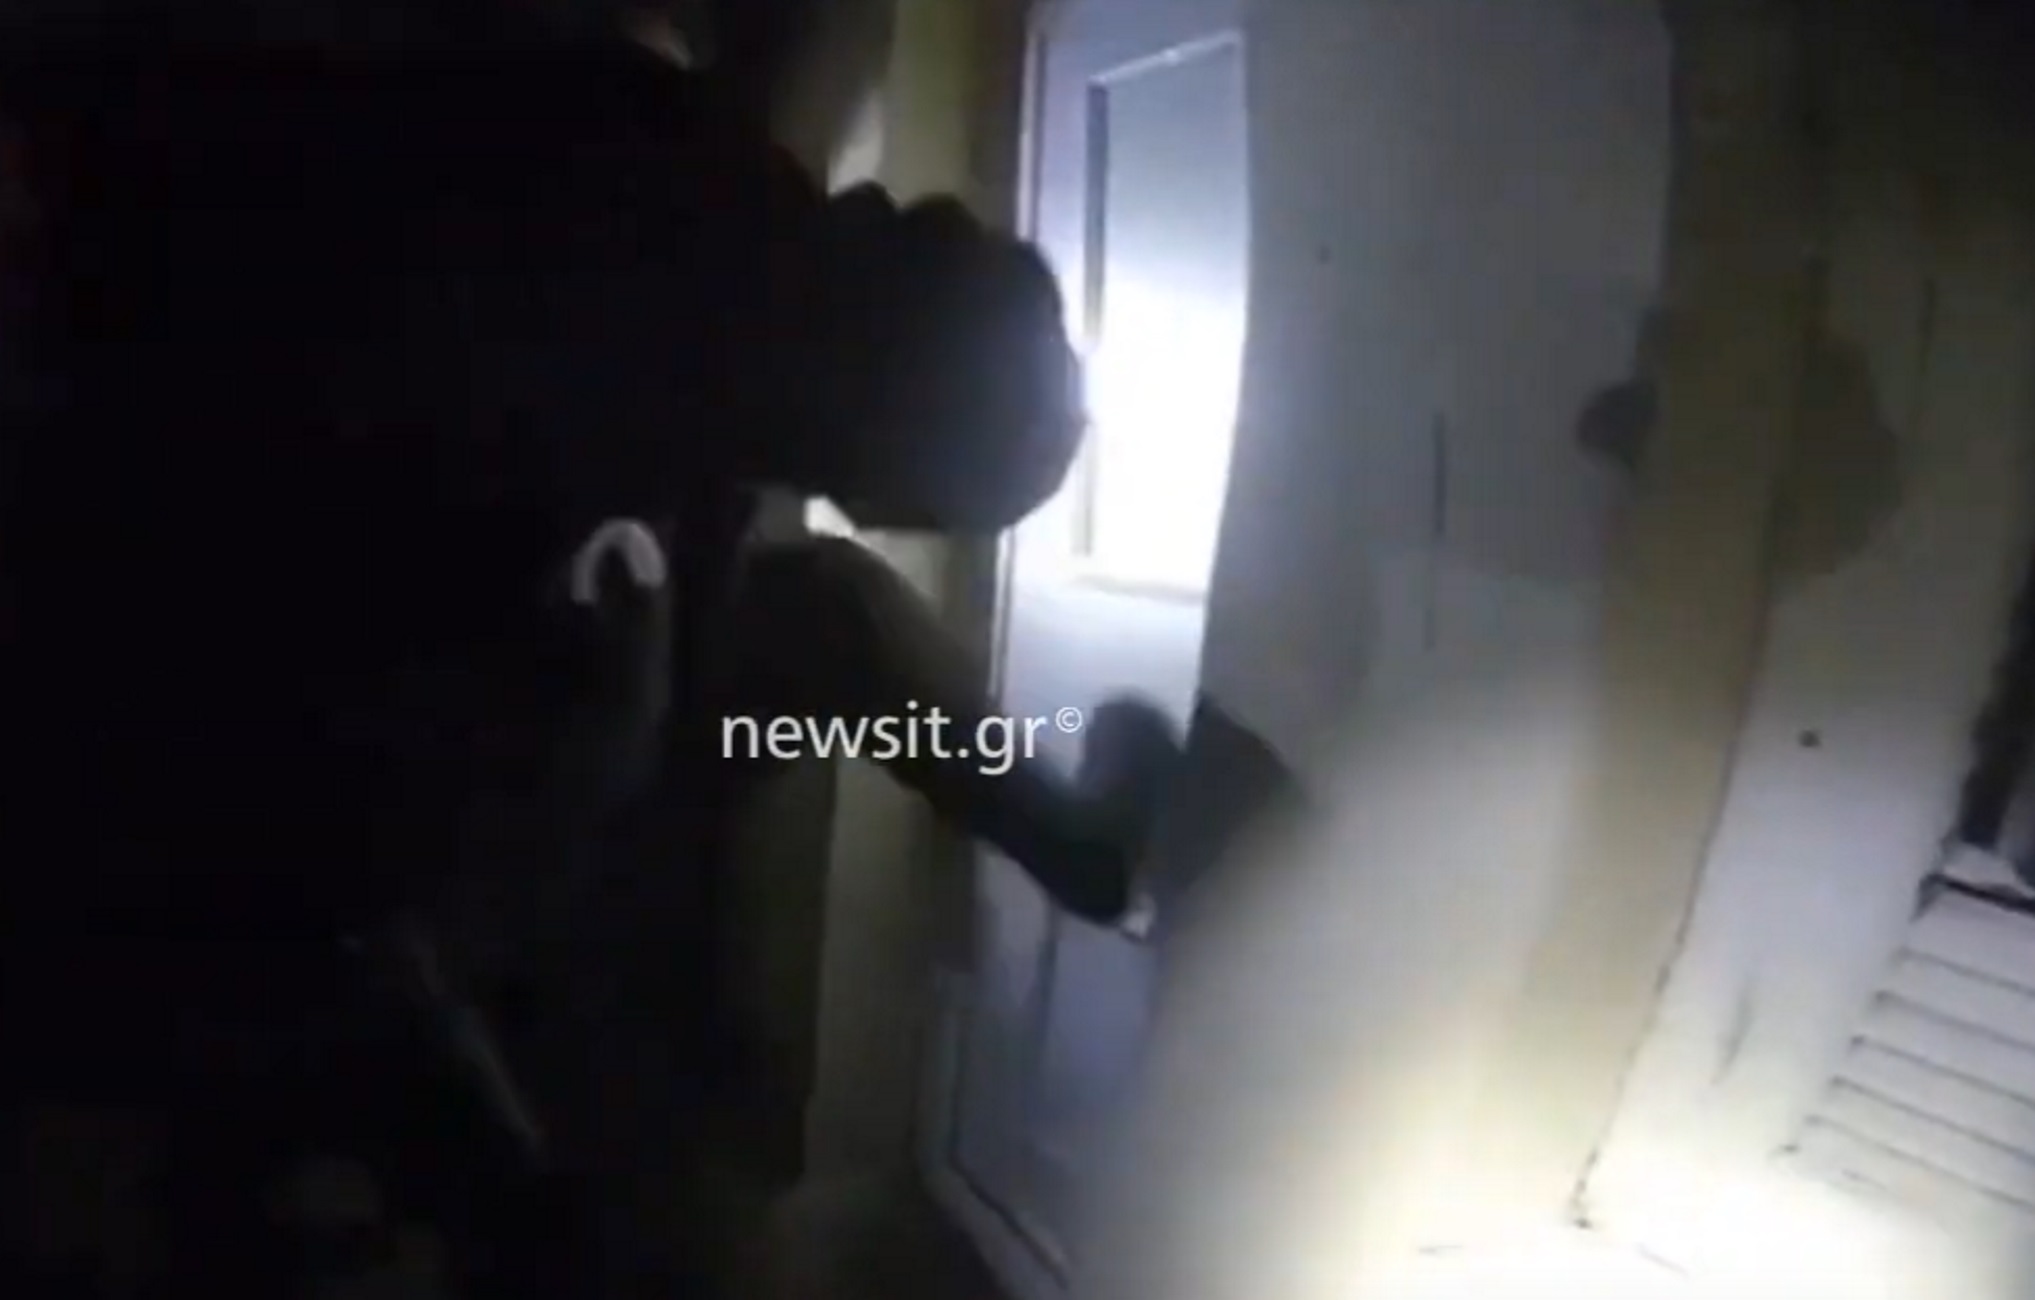 Βίντεο ντοκουμέντο με την έφοδο αστυνομικών της ΔΙΑΣ σε σπίτι για να σωθεί παγιδευμένη γυναίκα